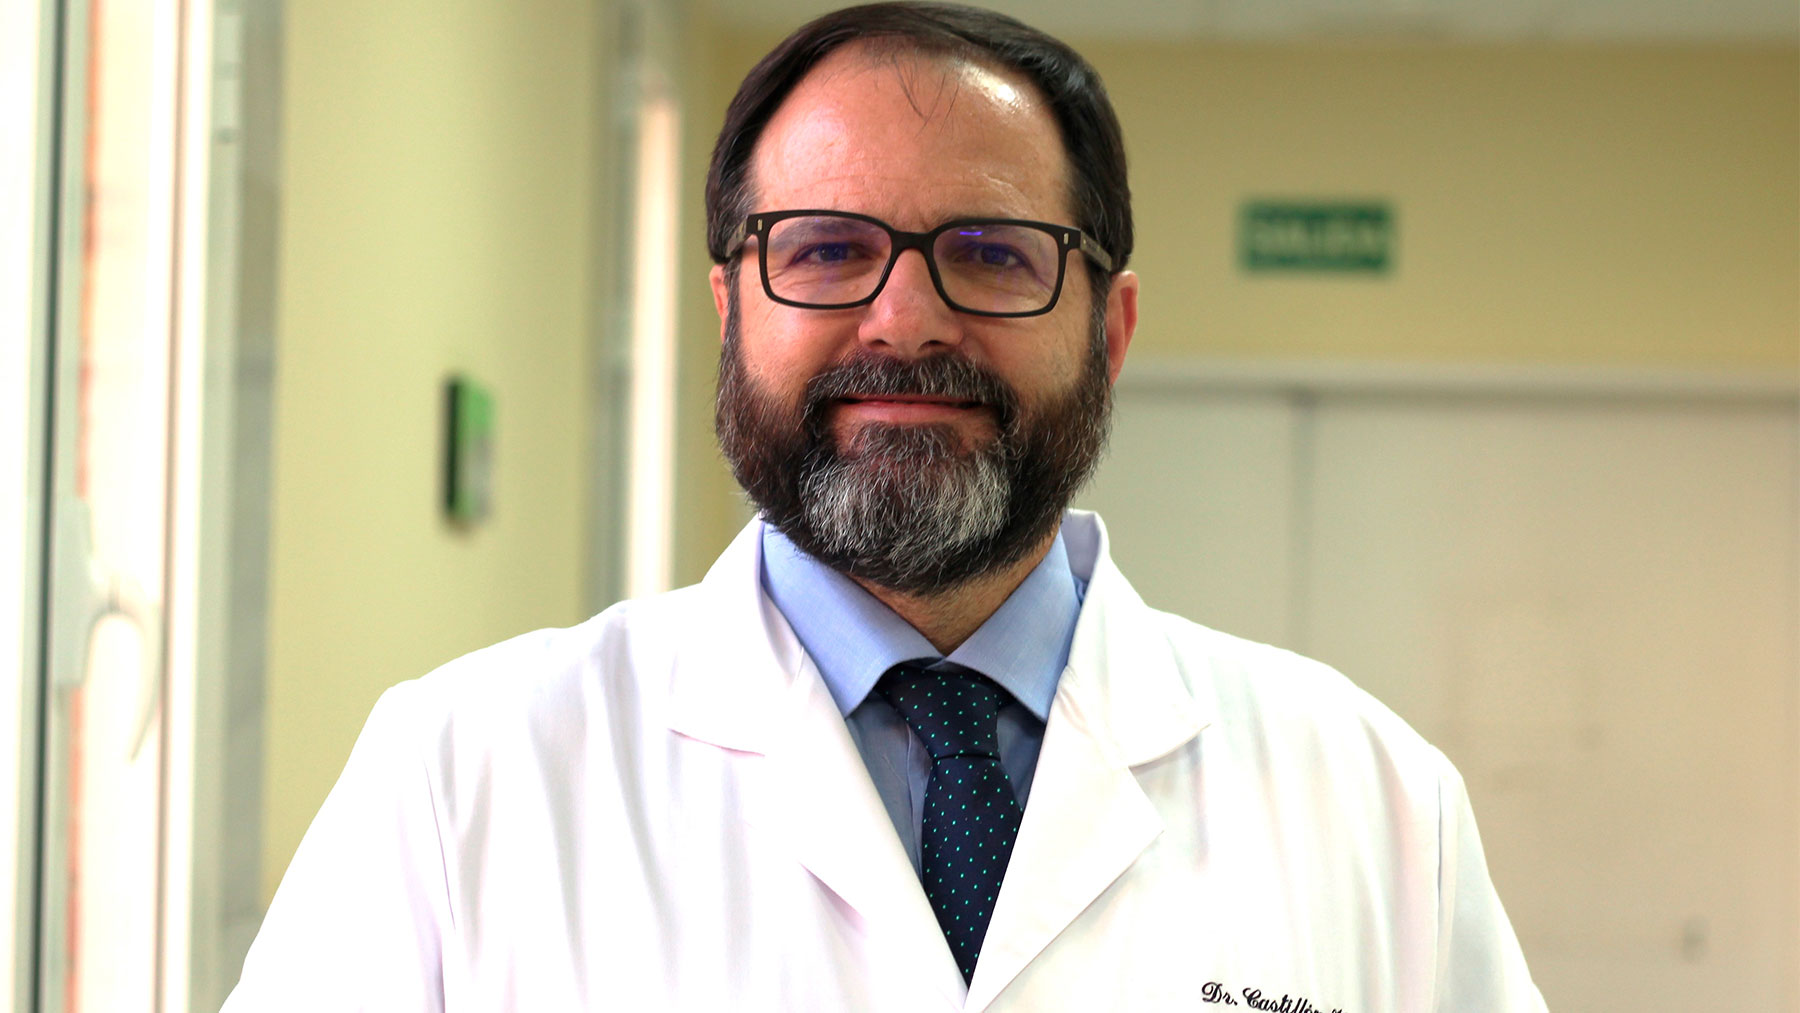 El Dr. Castillón es también director de la Escuela Europea de Laparoscopia Urológica.